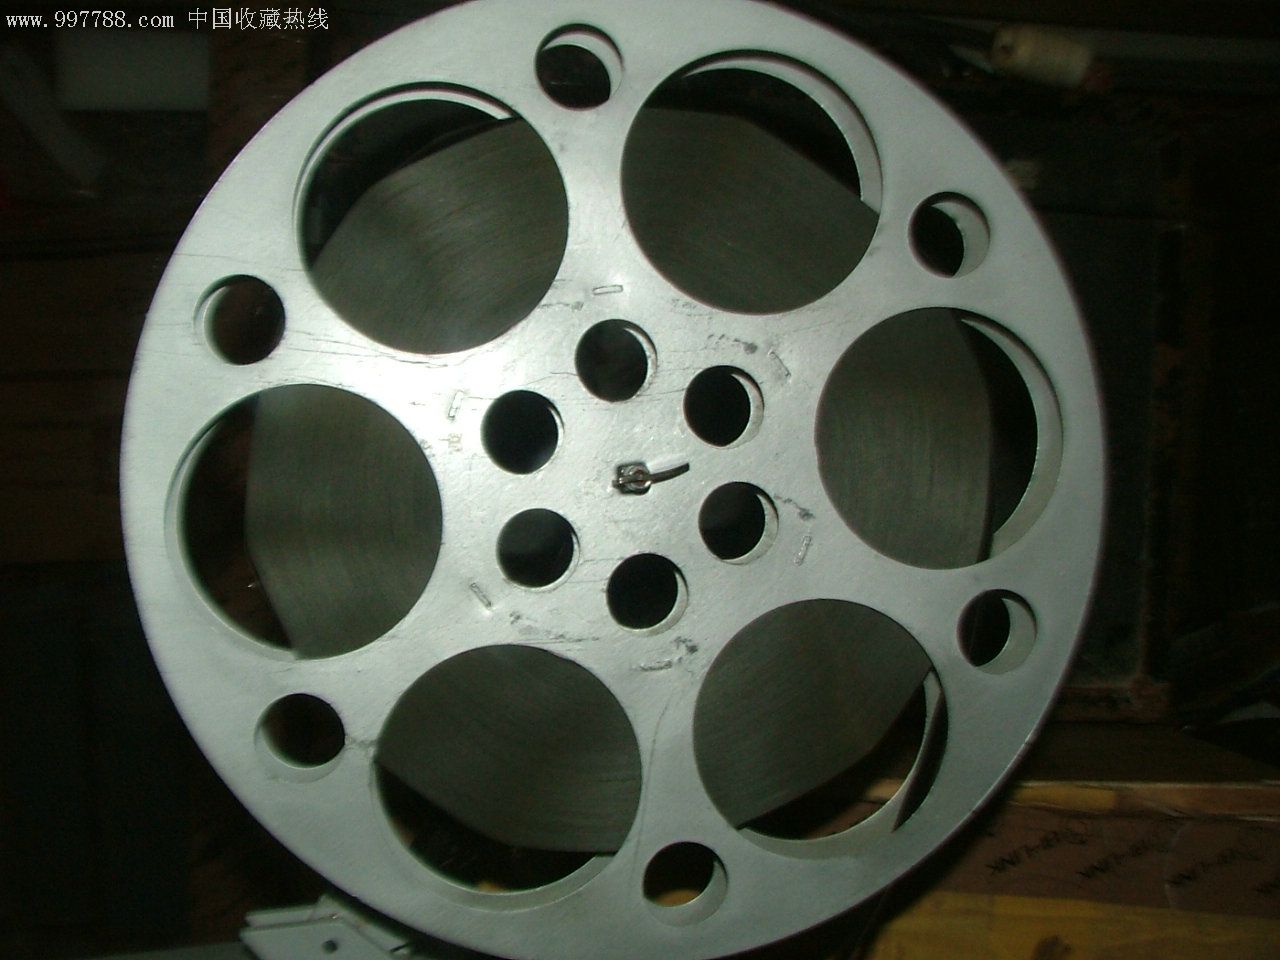 16毫米胶片老电影放映设备:16毫米电影胶片拷贝之(试机片)与片夹